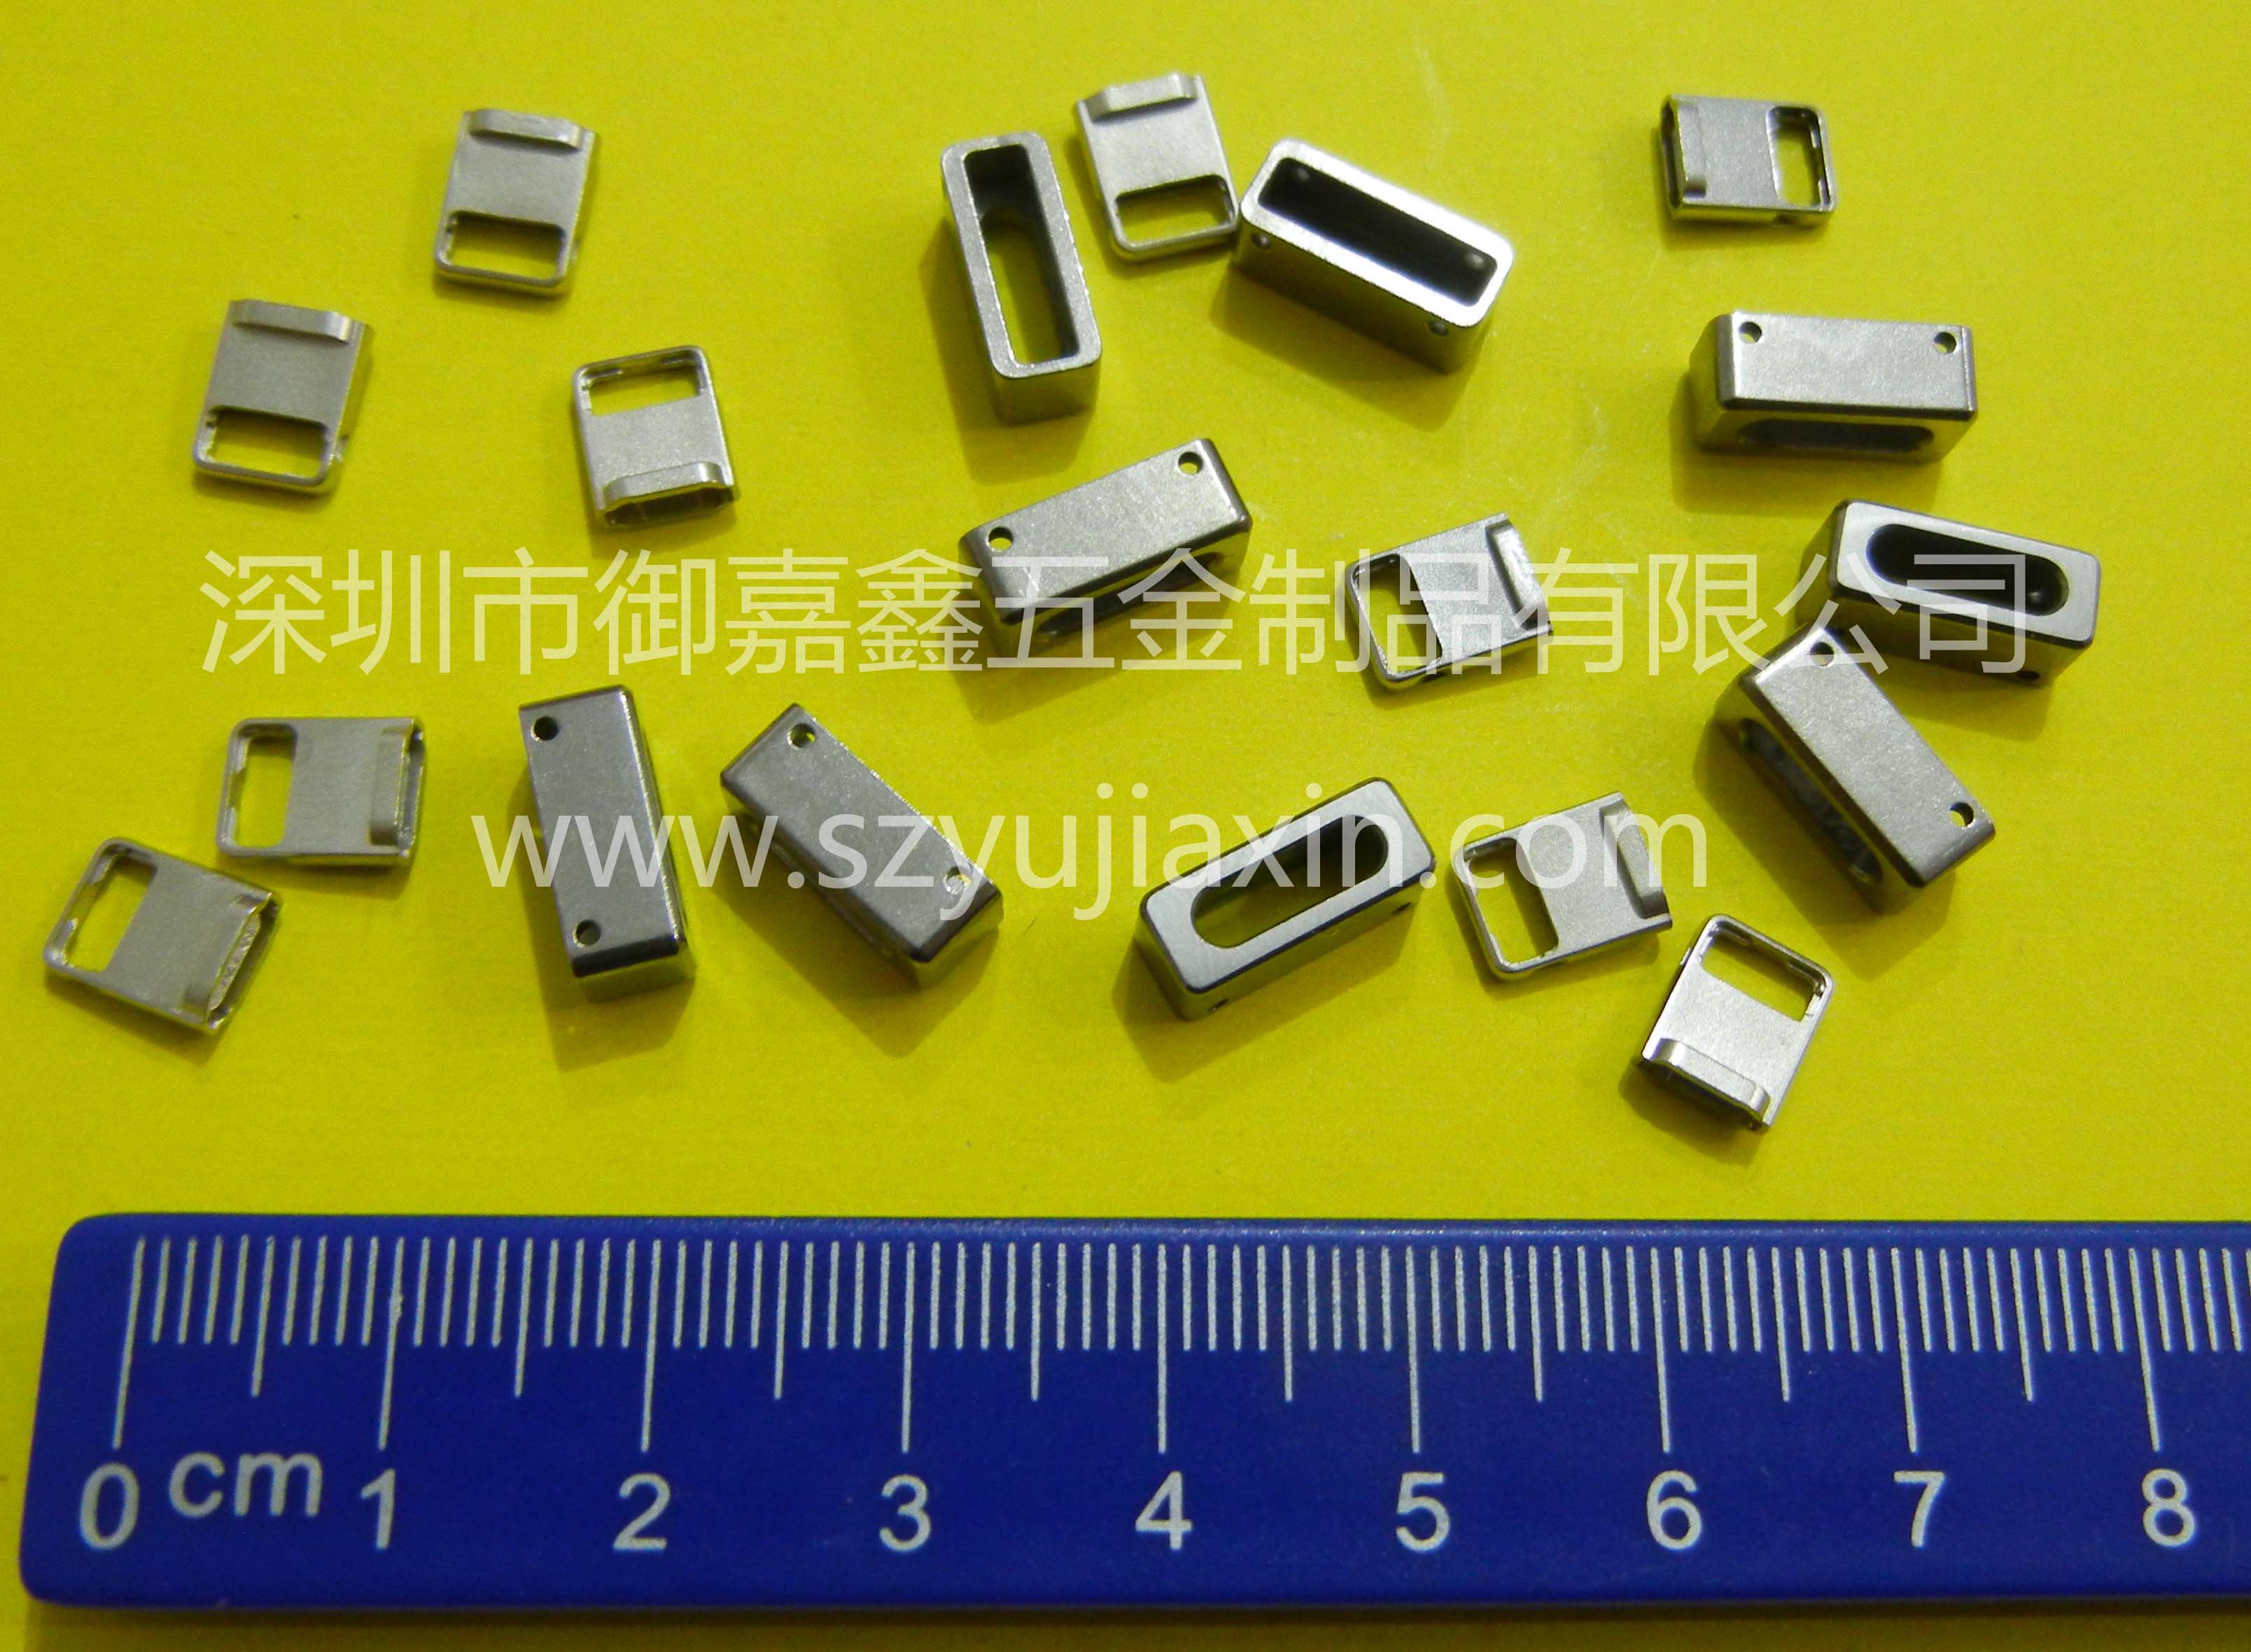 金属射出部品 | Apple 6 アクセサリー | 精密構造部品 | 微細構造部品 | Yujiaxin Group | Shenzhen Enterprise Yellow Pages